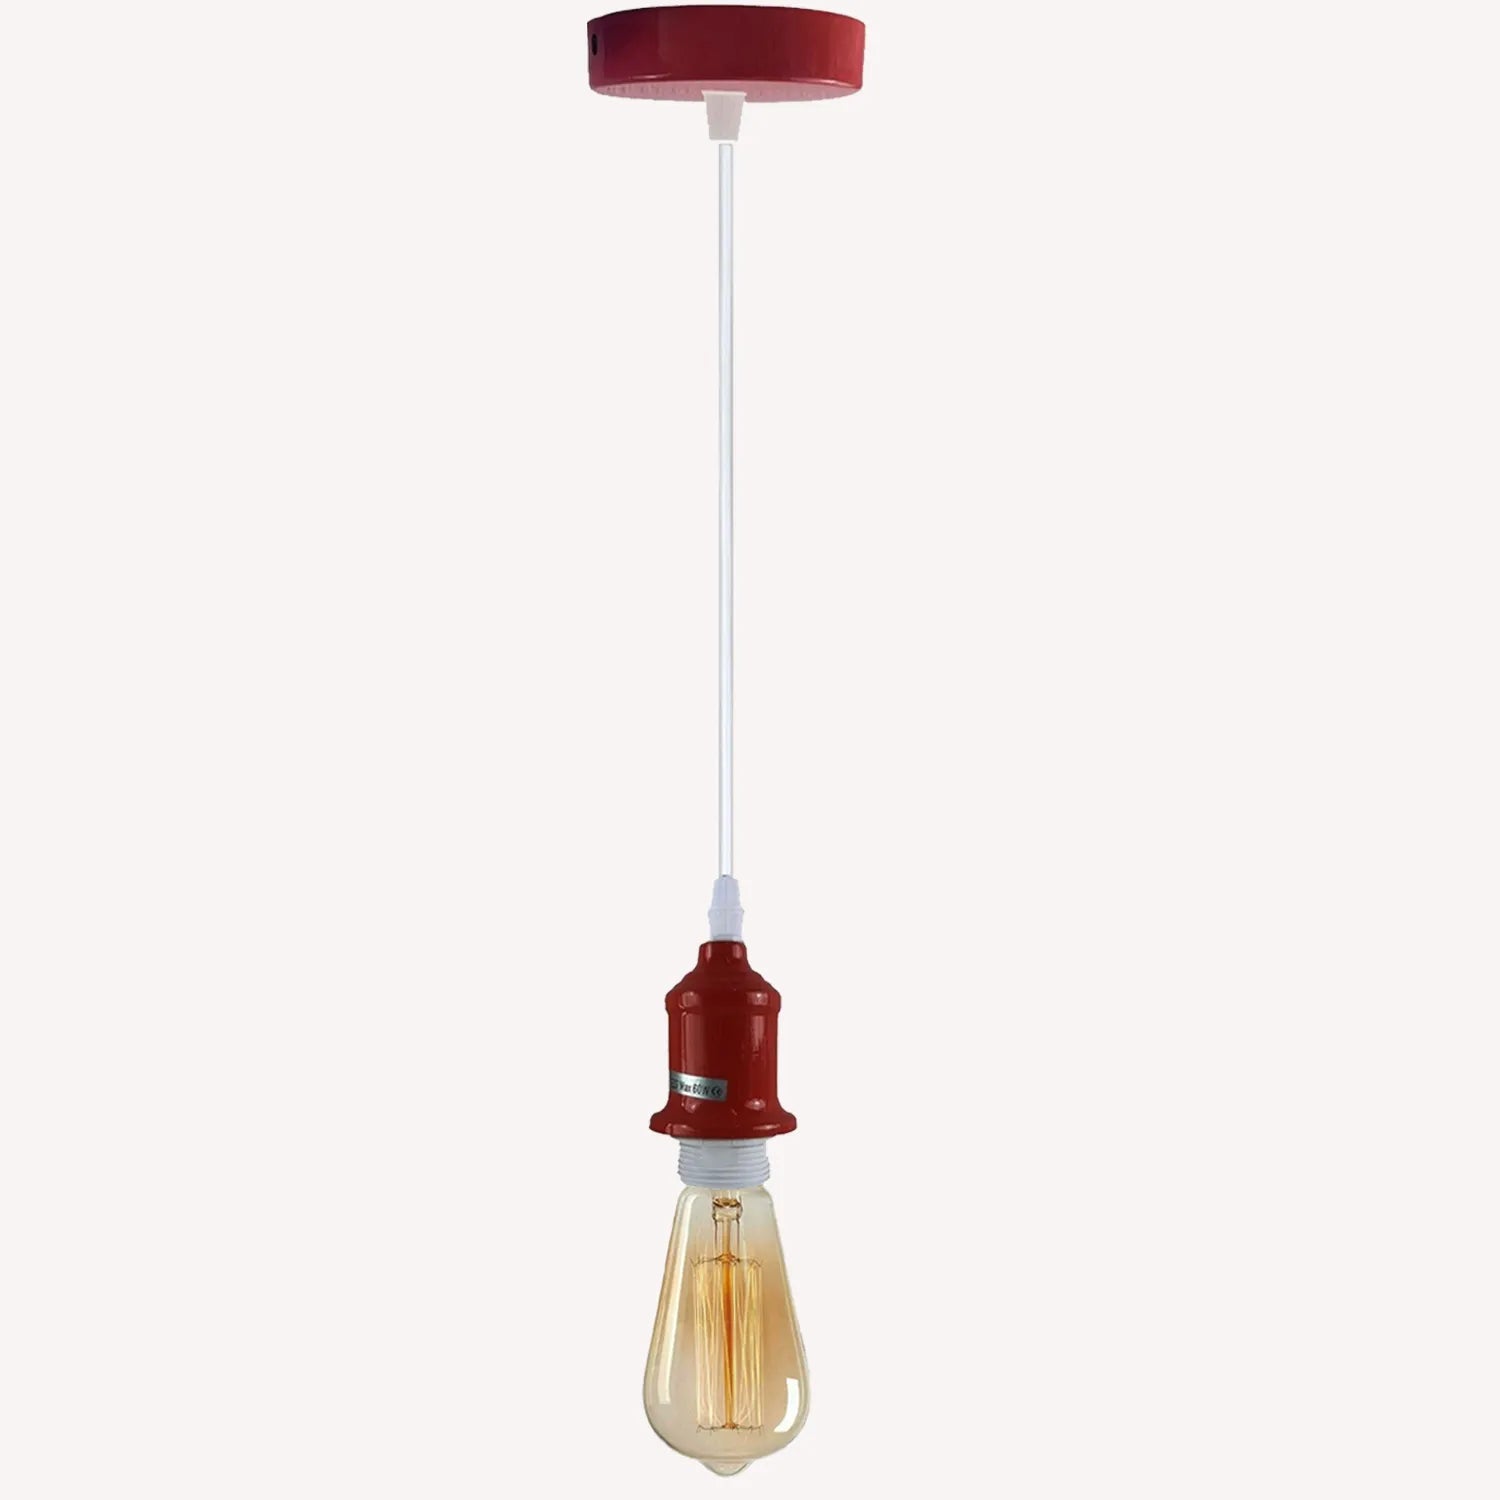 Industrial Pendant Light Fitting, Lamp Holder Ceiling Hanging Light~4269